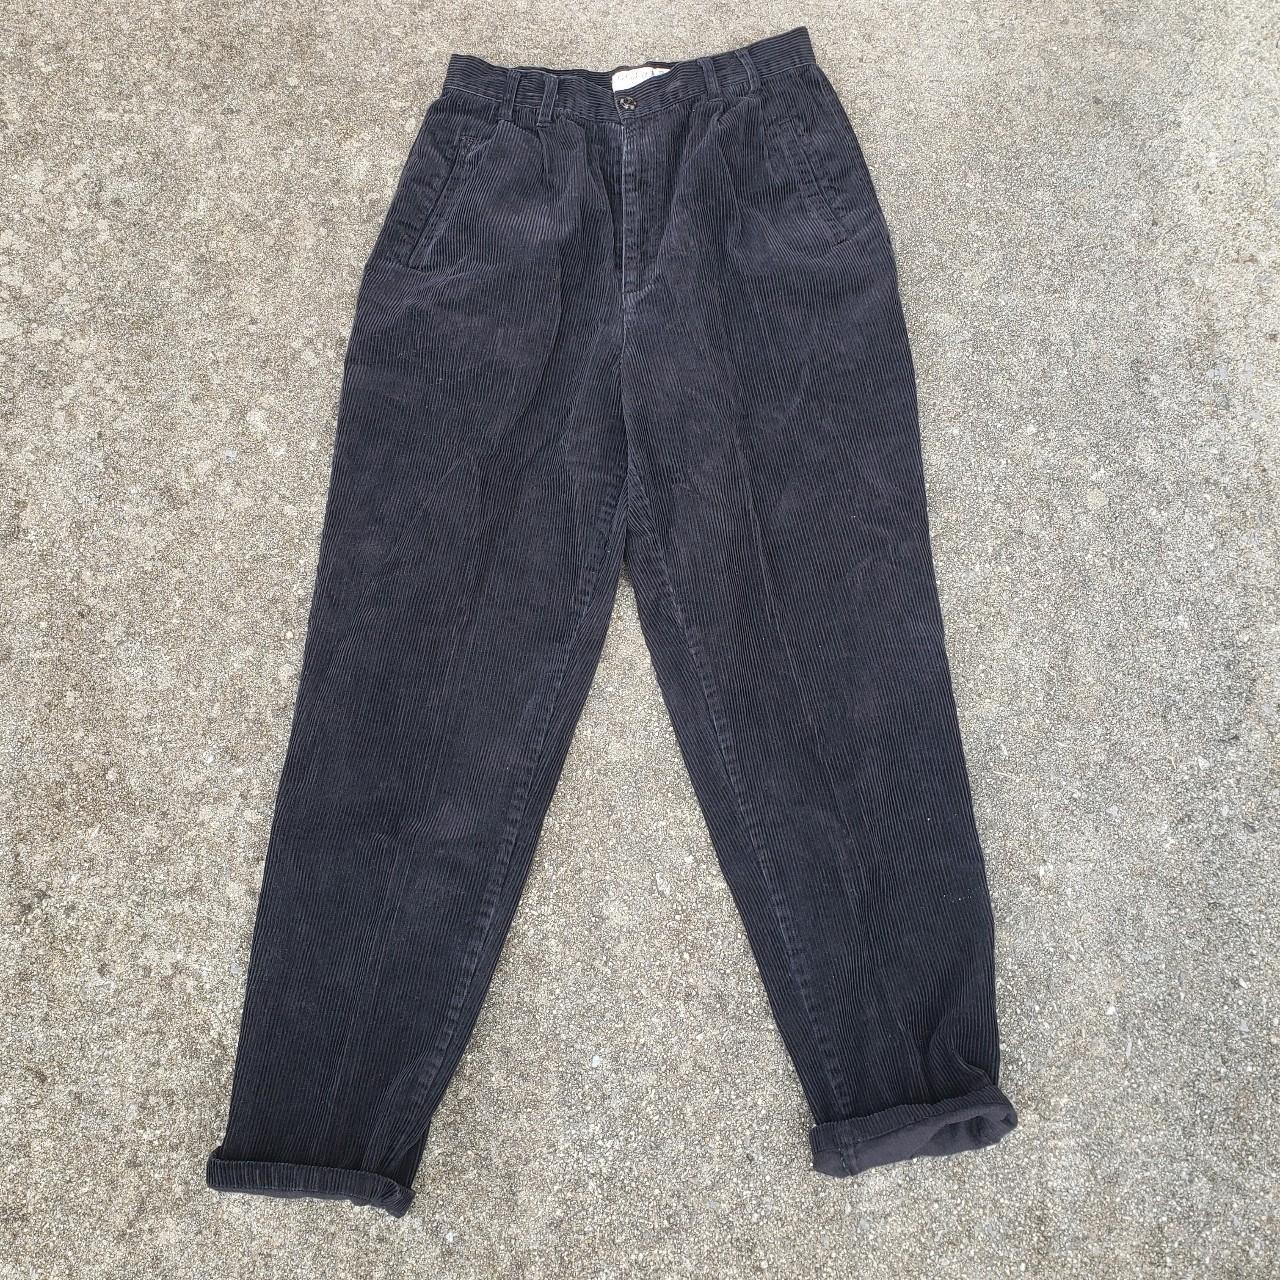 Bugle boy pants Collection for her 🖤 Vintage... - Depop